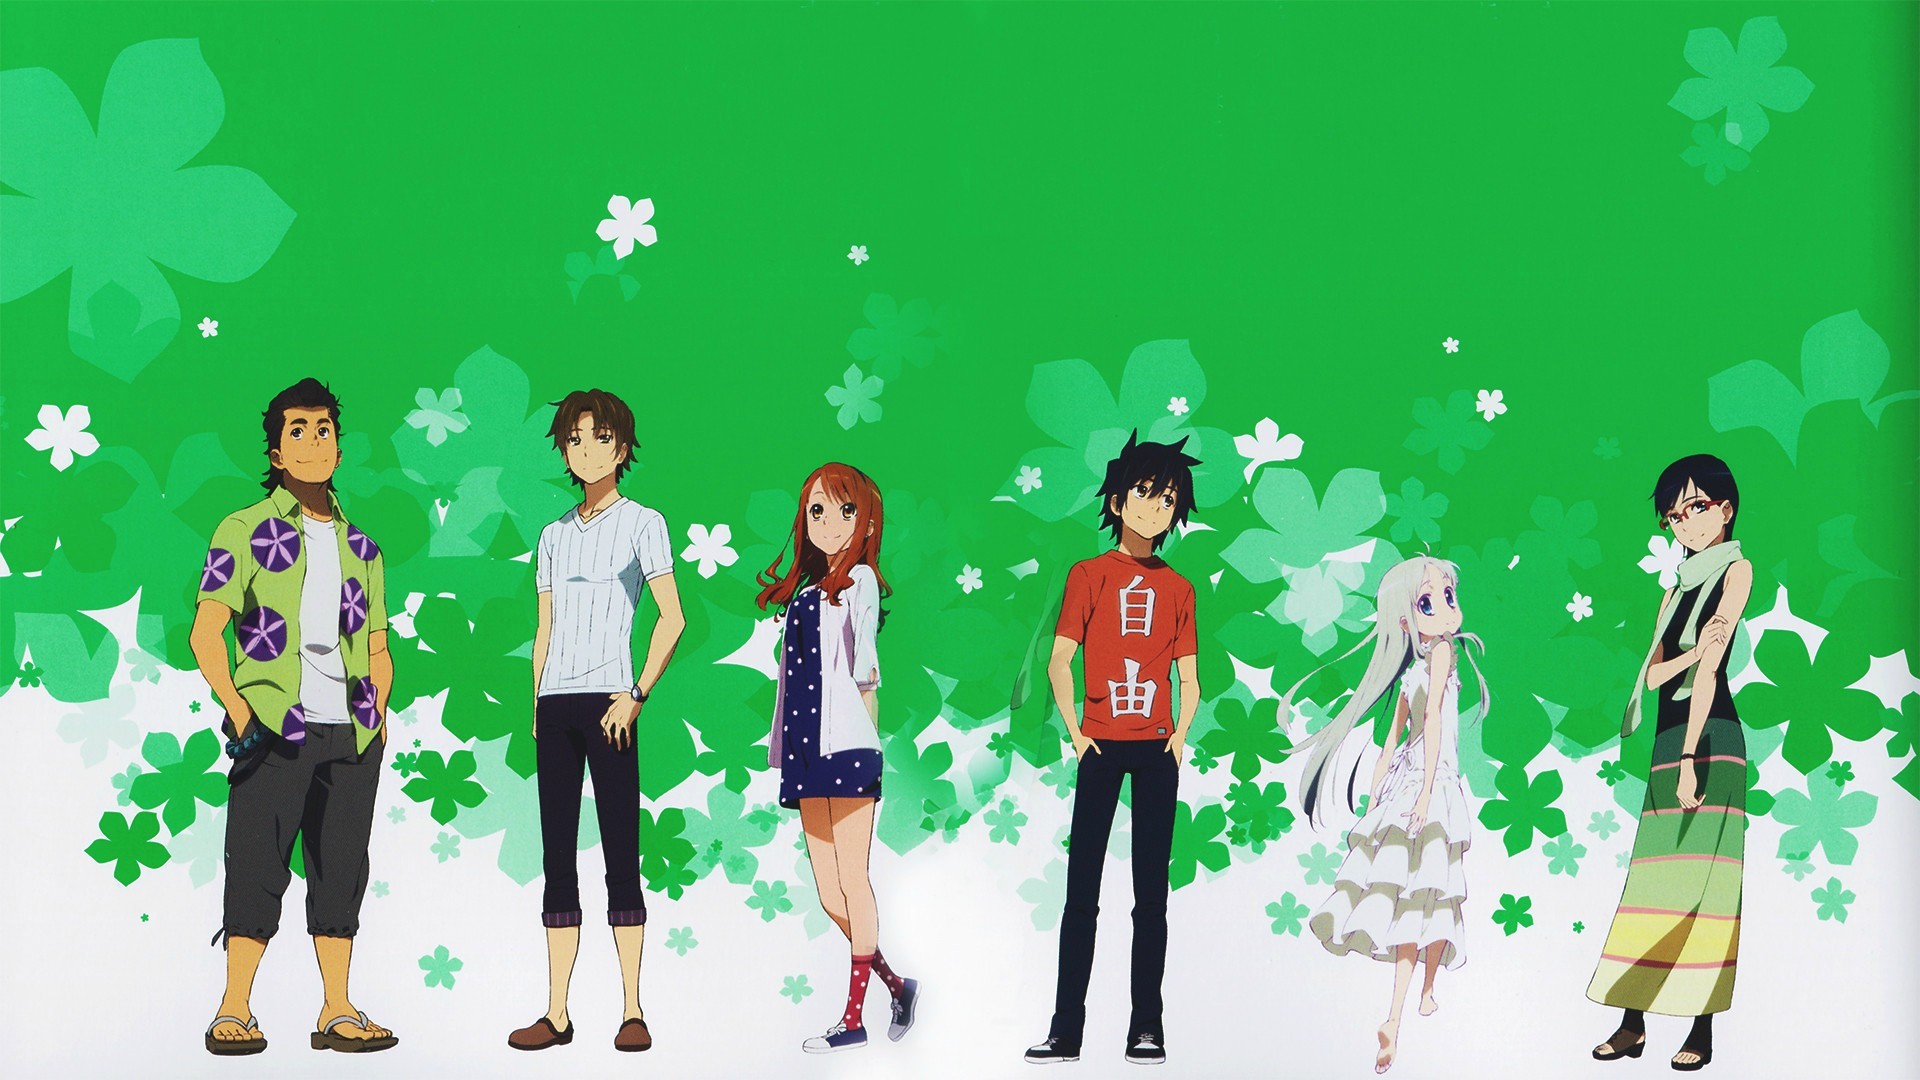 Anime 1920x1080 Ano Hi Mita Hana no Namae wo Bokutachi wa Mada Shiranai green background anime boys anime girls standing